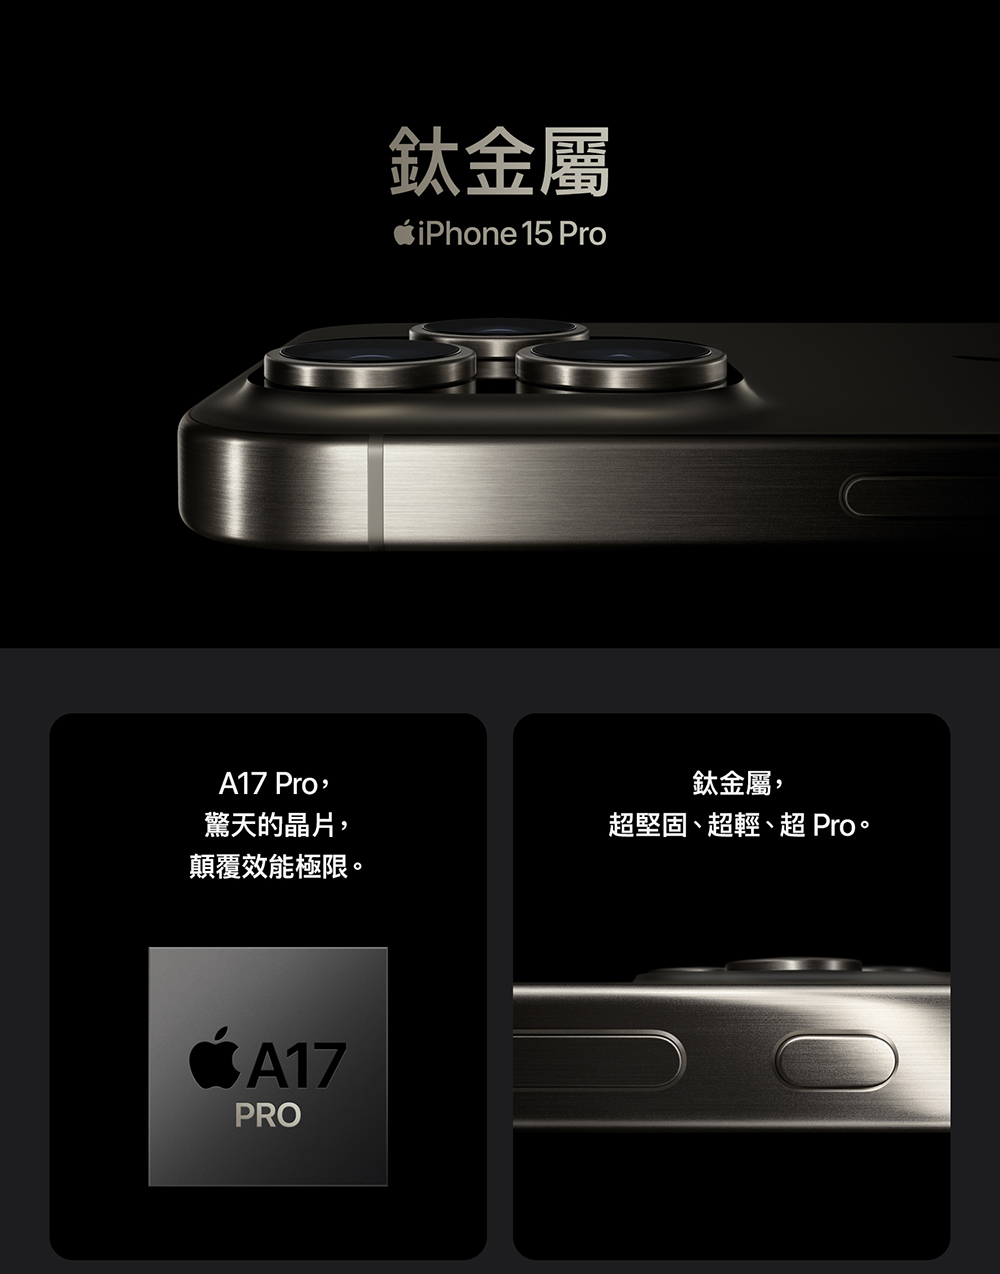 Apple 藍色限定優惠iPhone 15 Pro(256G